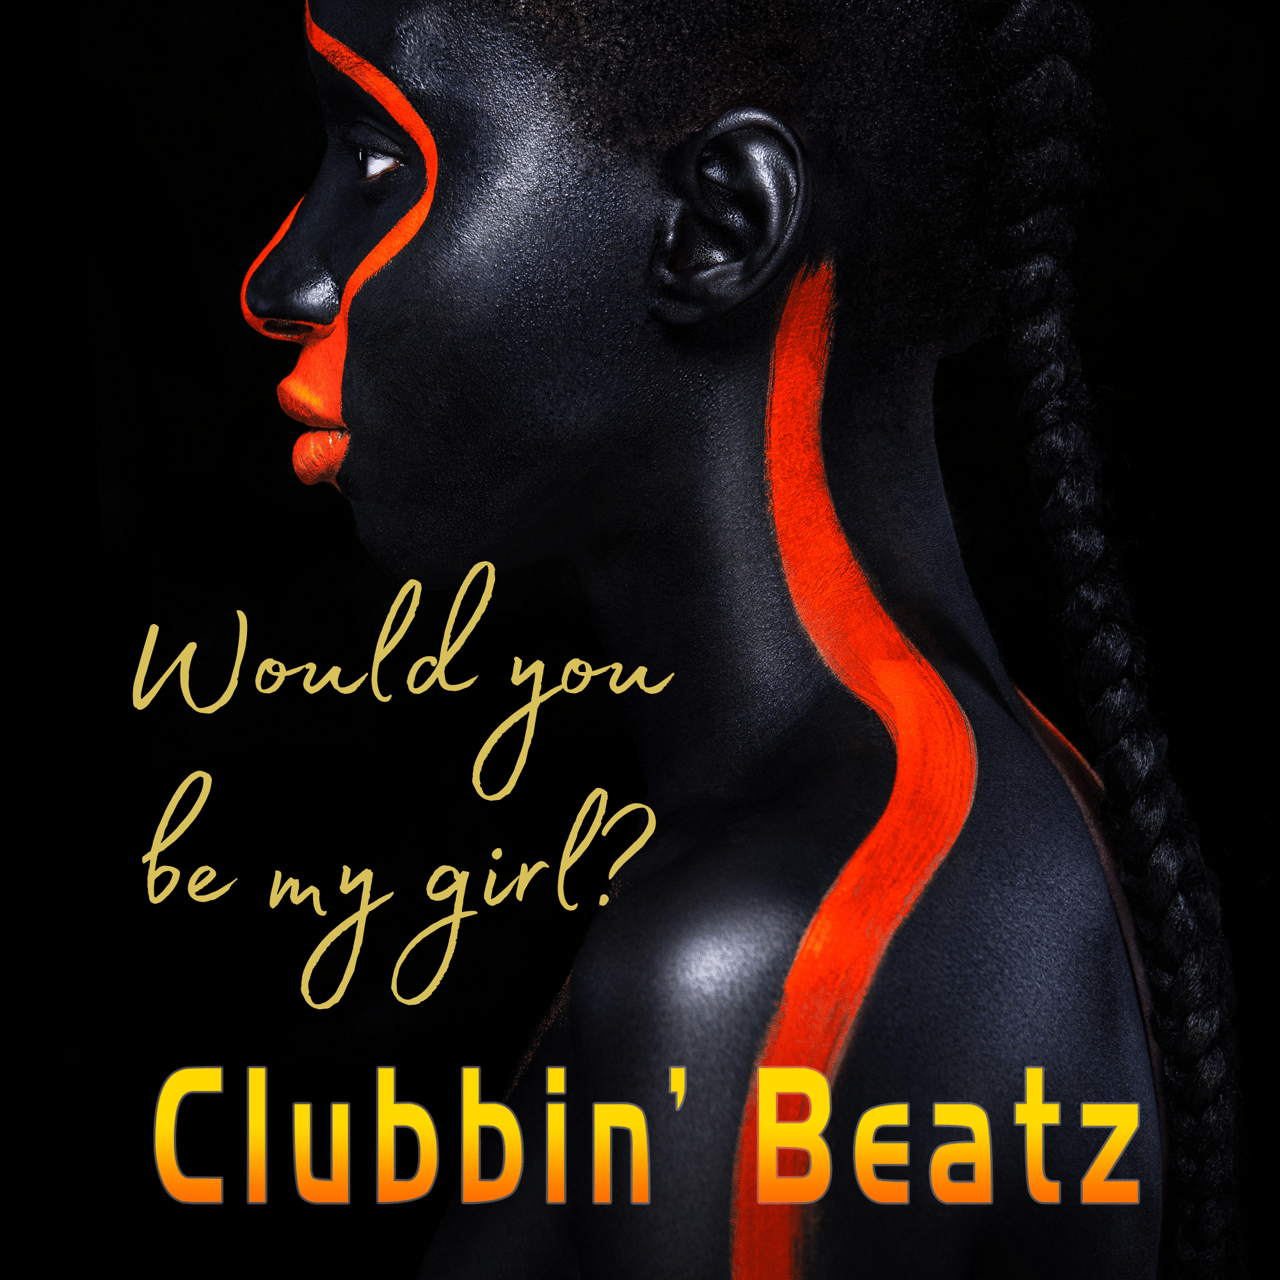 Clubbin' Beatz - Would you be my girl 